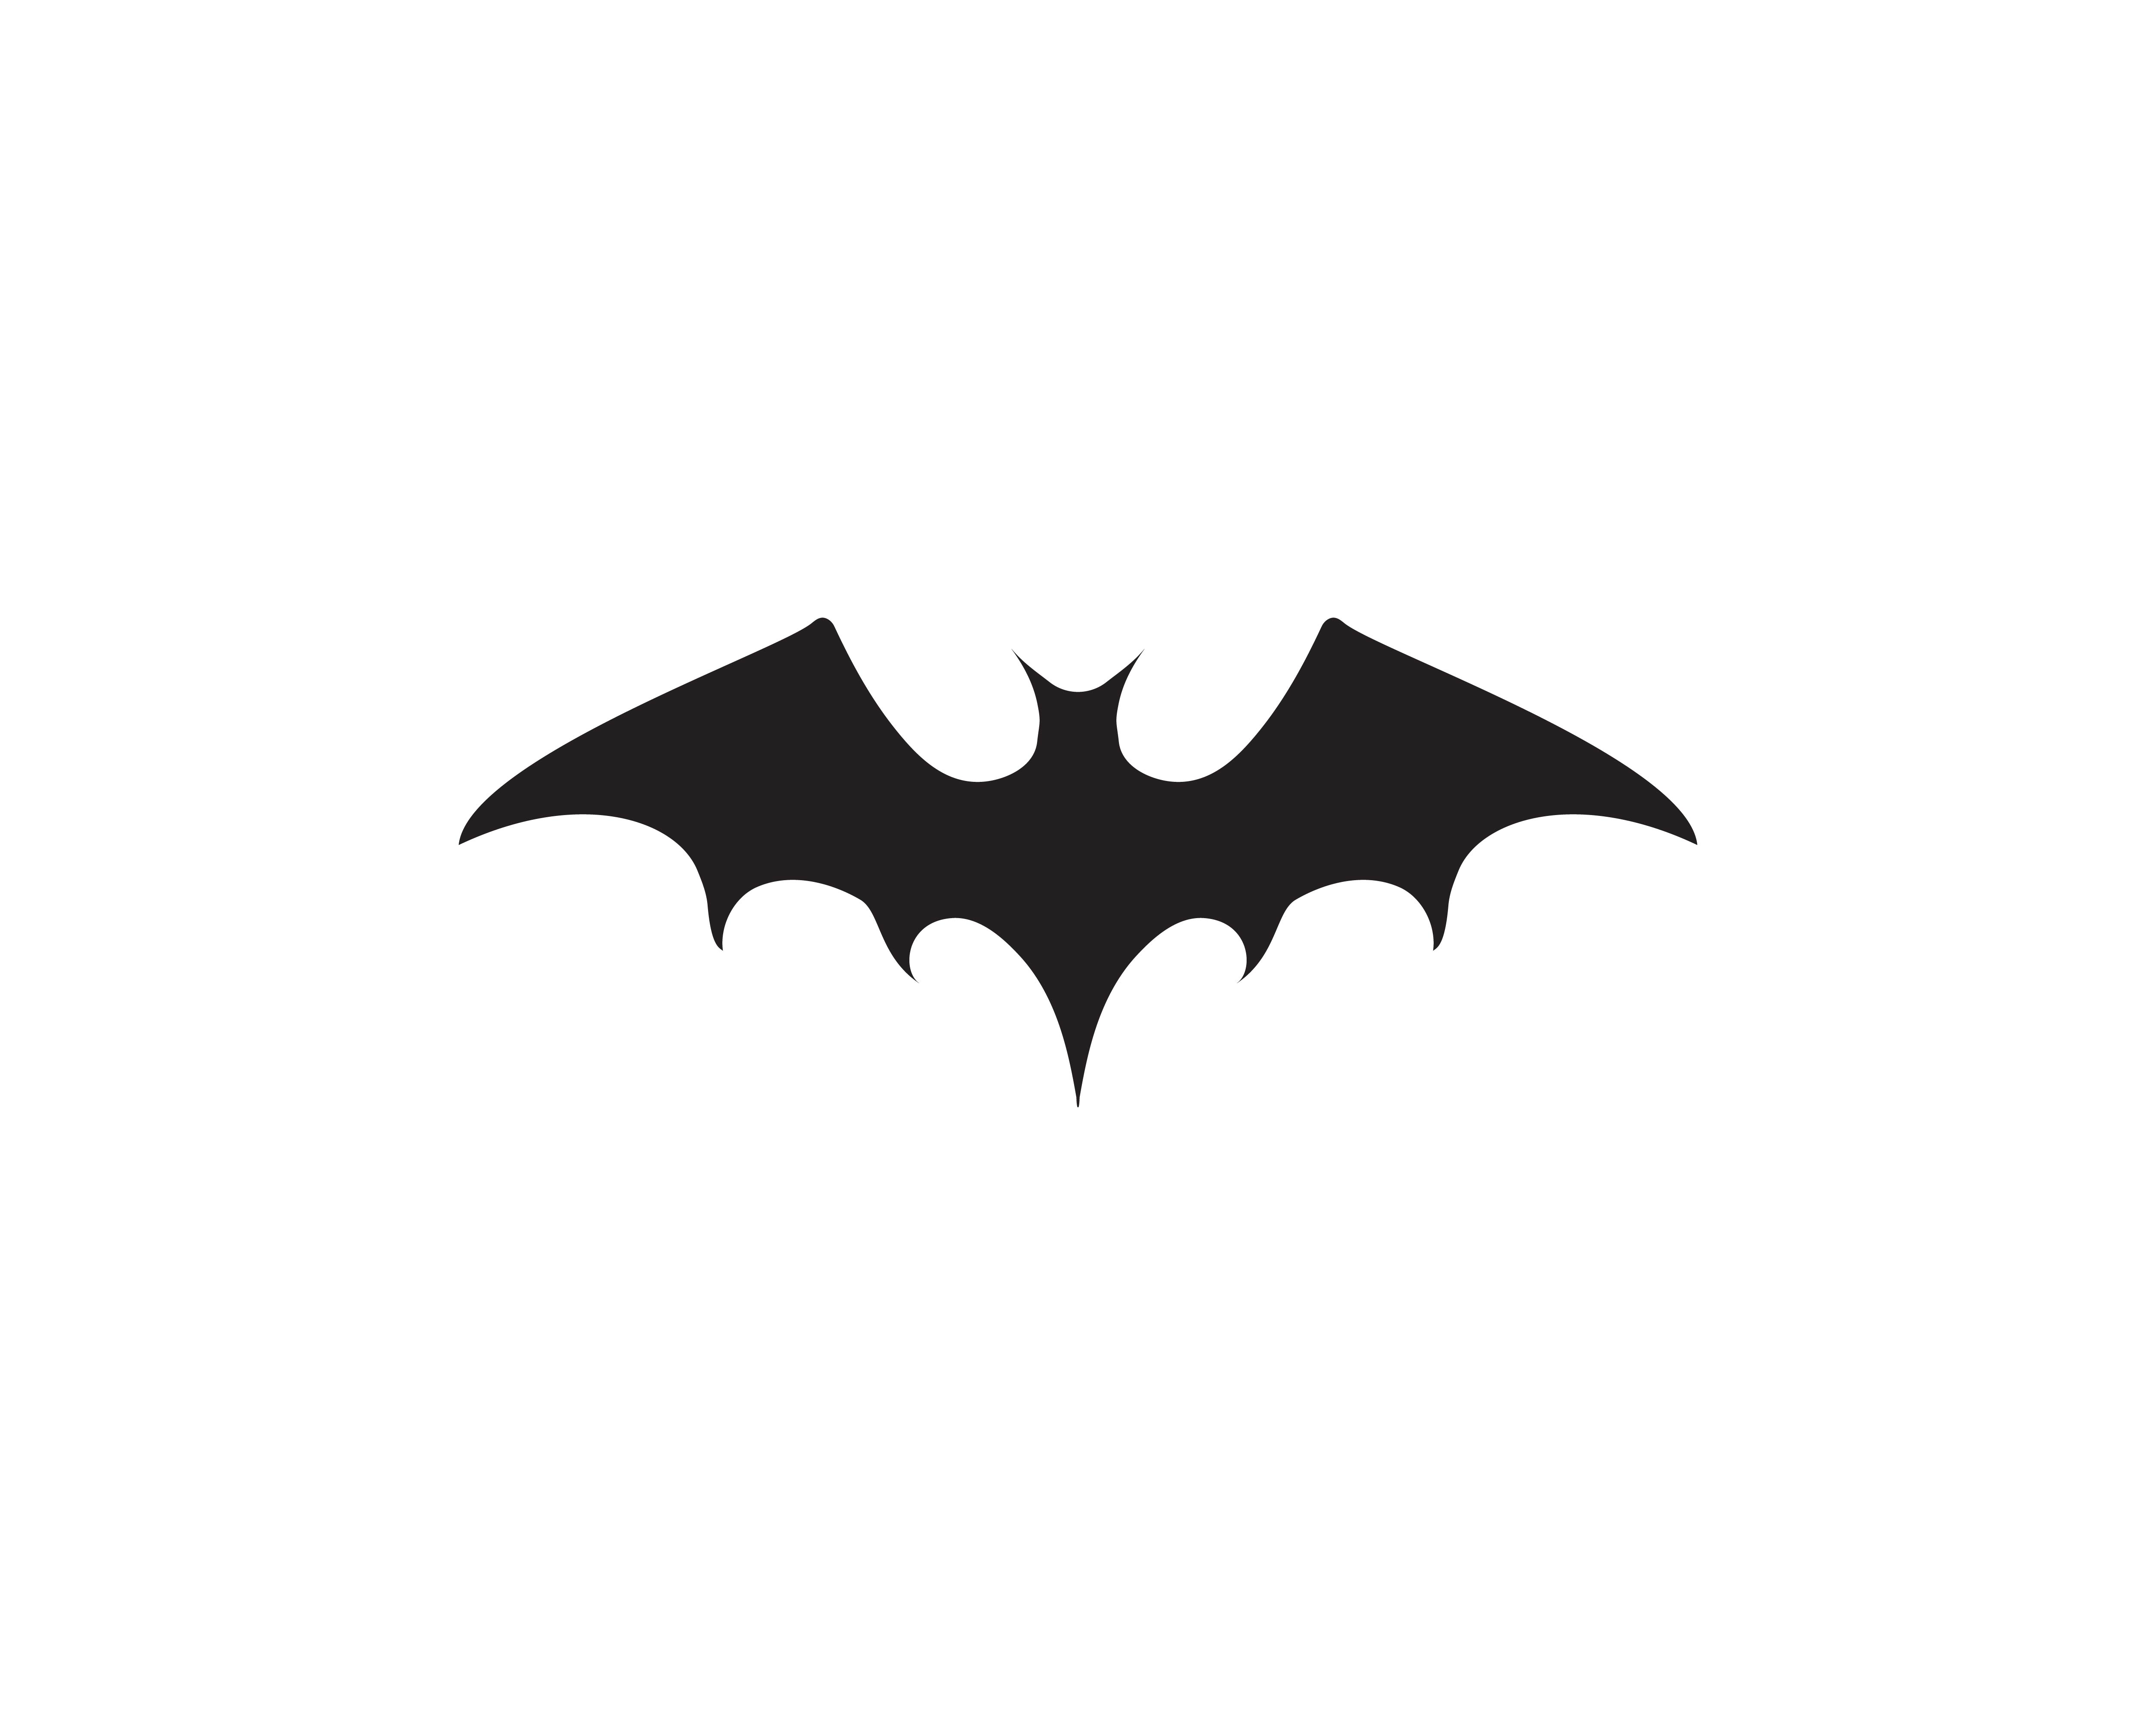 The bat иконка